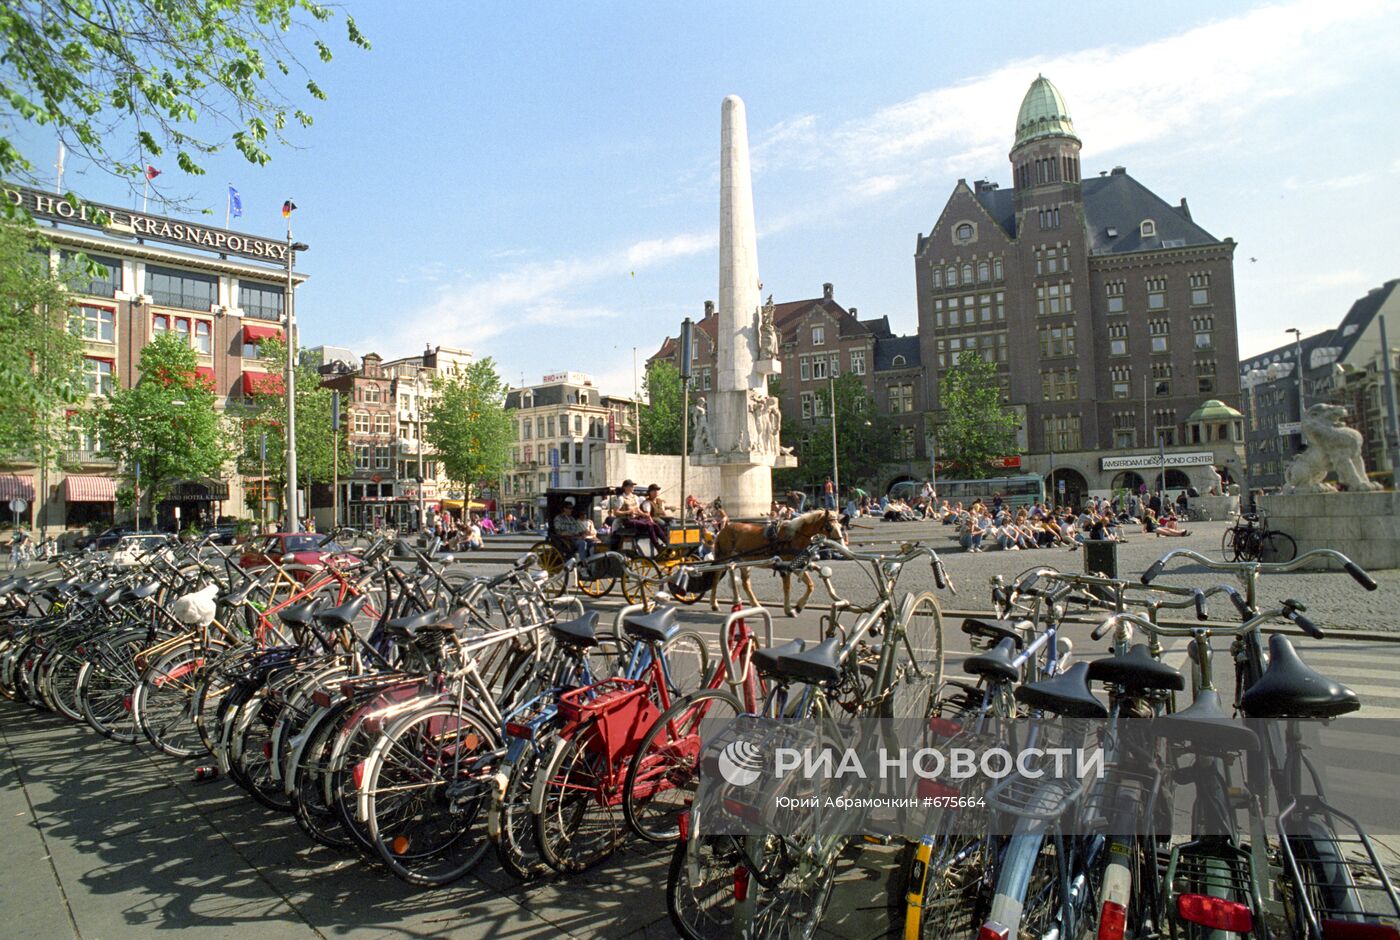 На площади Дам в Амстердаме